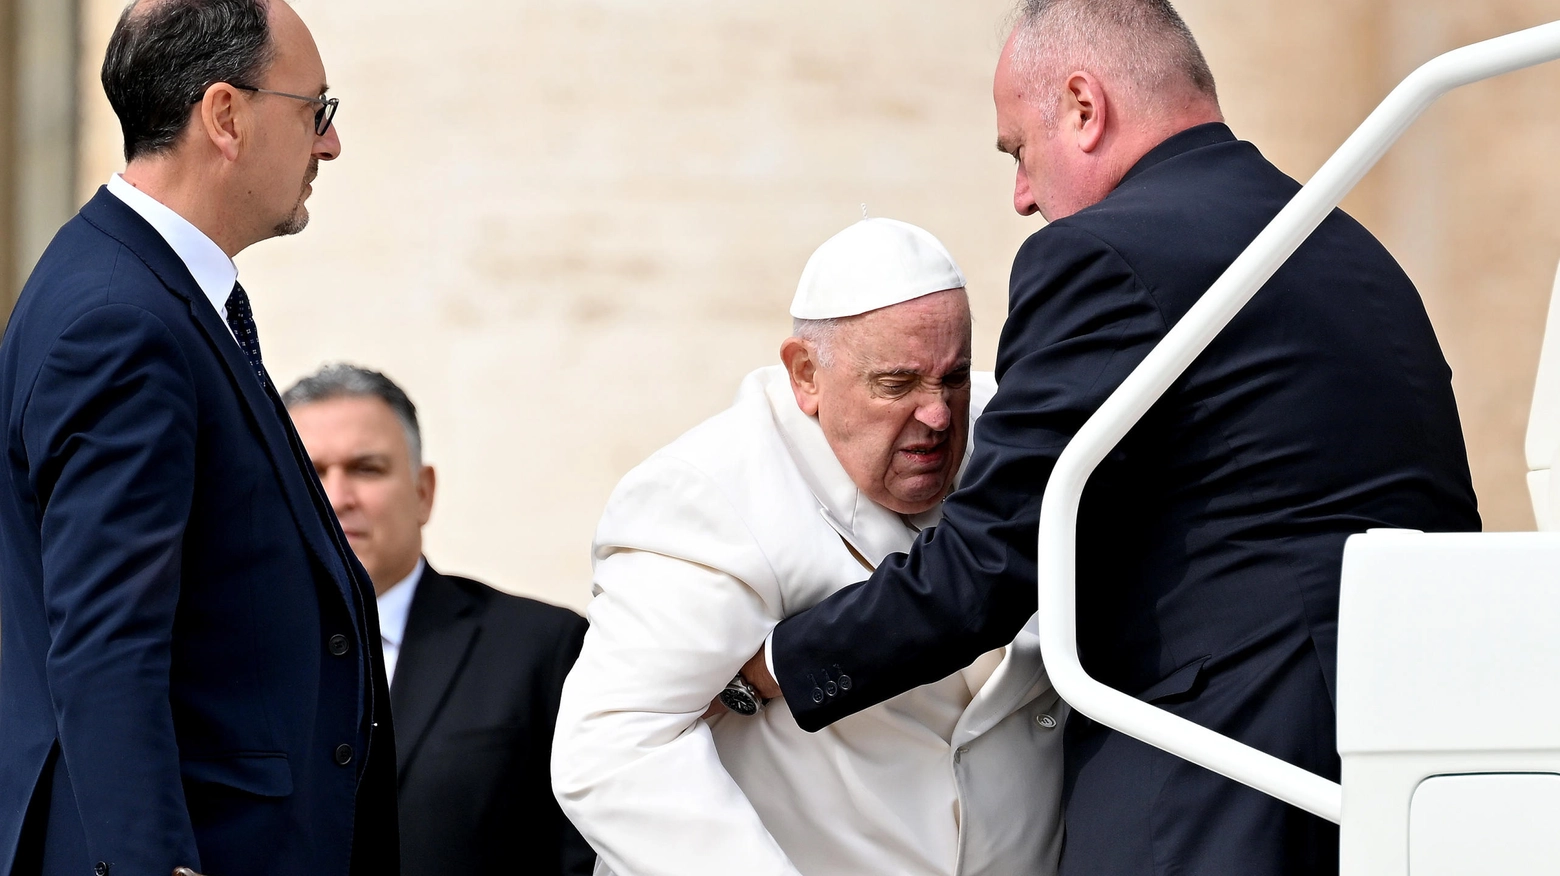 Il Papa aiutato ad alzarsi per salire sulla papa mobile alla fine dell'udienza generale di oggi, 29 marzo (Ansa)